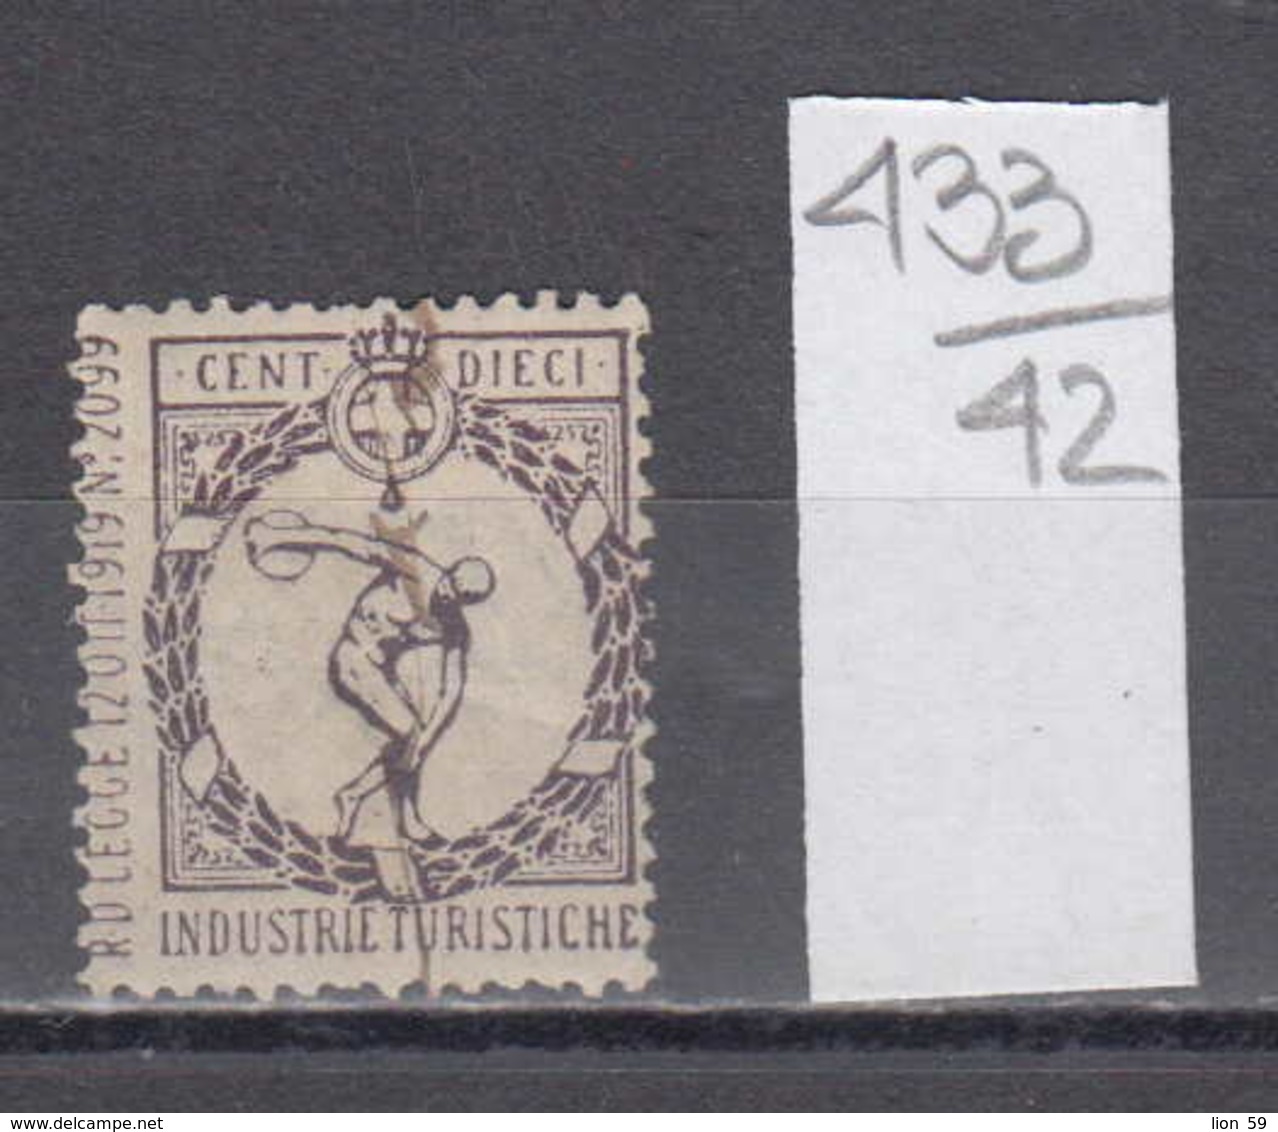 42K433 / 1919 - 10 CENT - INDUSTRIE TURISTICHE , Revenue Fiscaux Steuermarken , Italia Italy Italie - Steuermarken